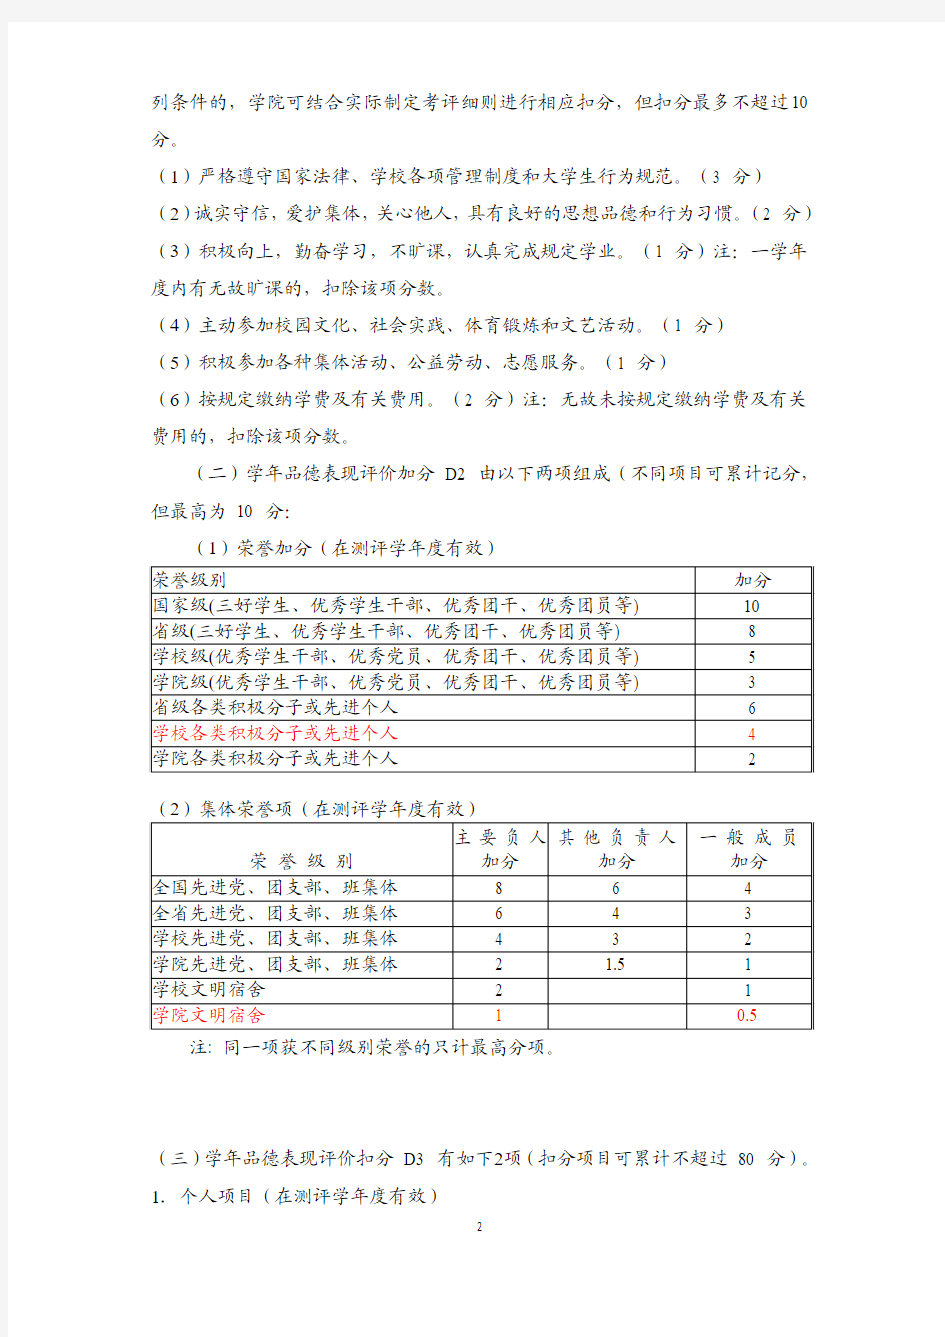 2-广东工业大学管理学院本科学生综合素质测评办法细则(2011级适用)